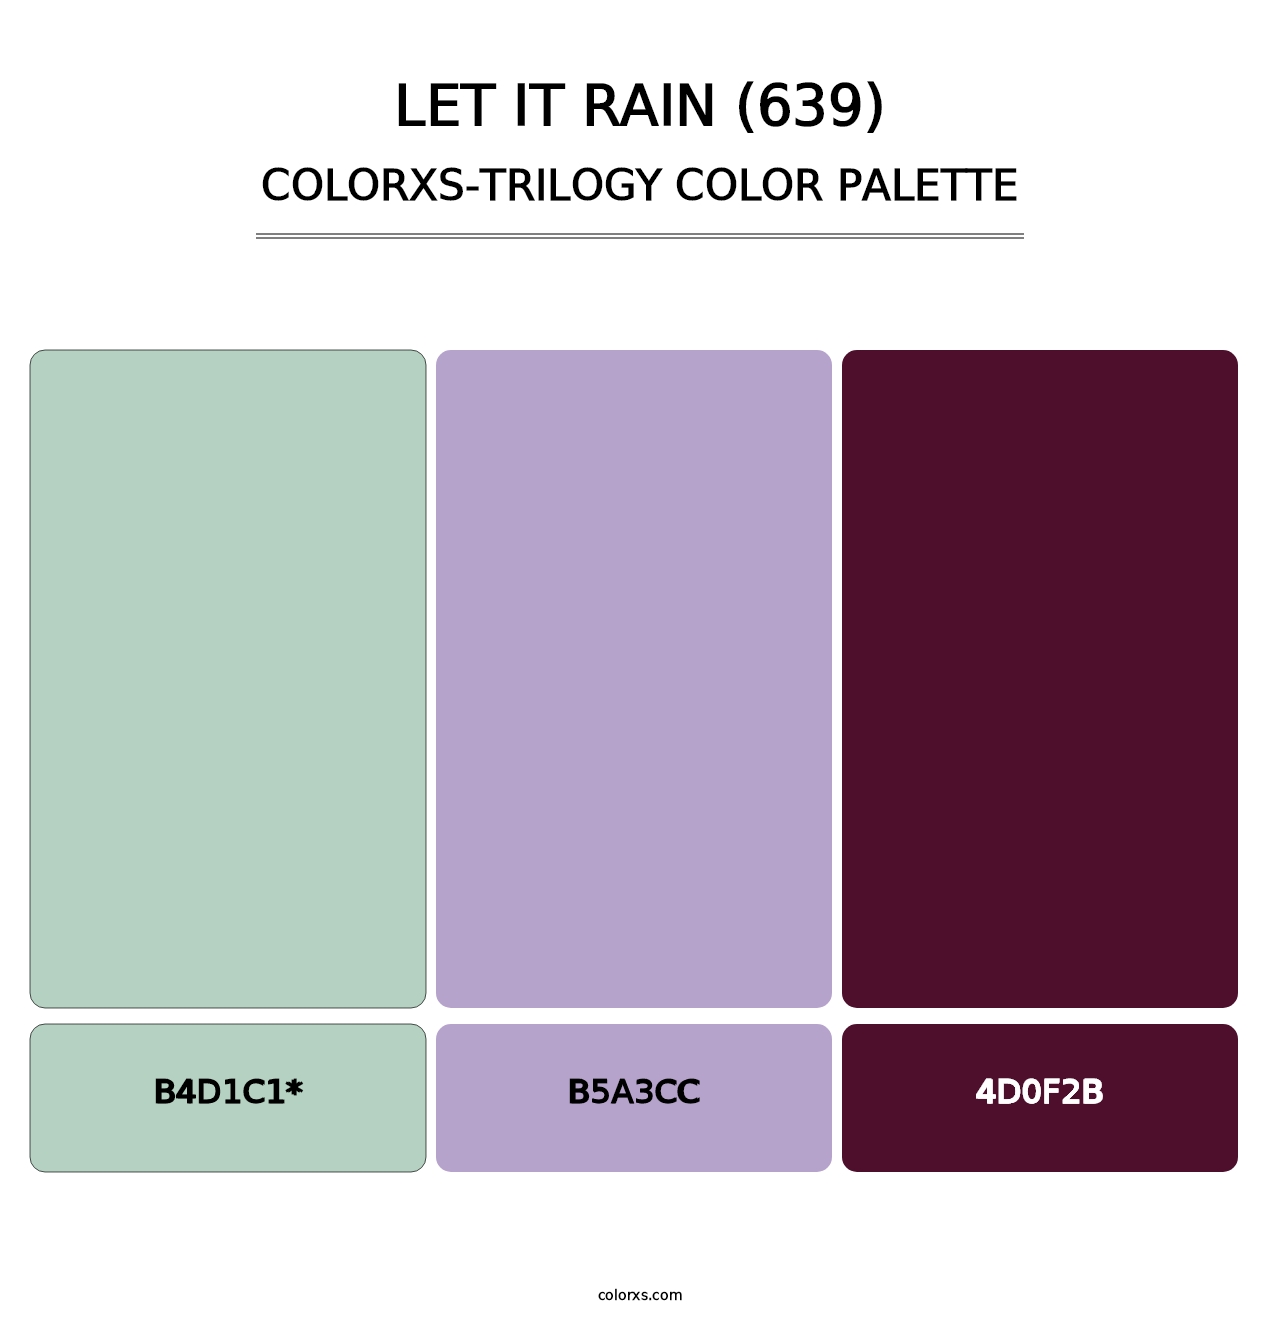 Let It Rain (639) - Colorxs Trilogy Palette